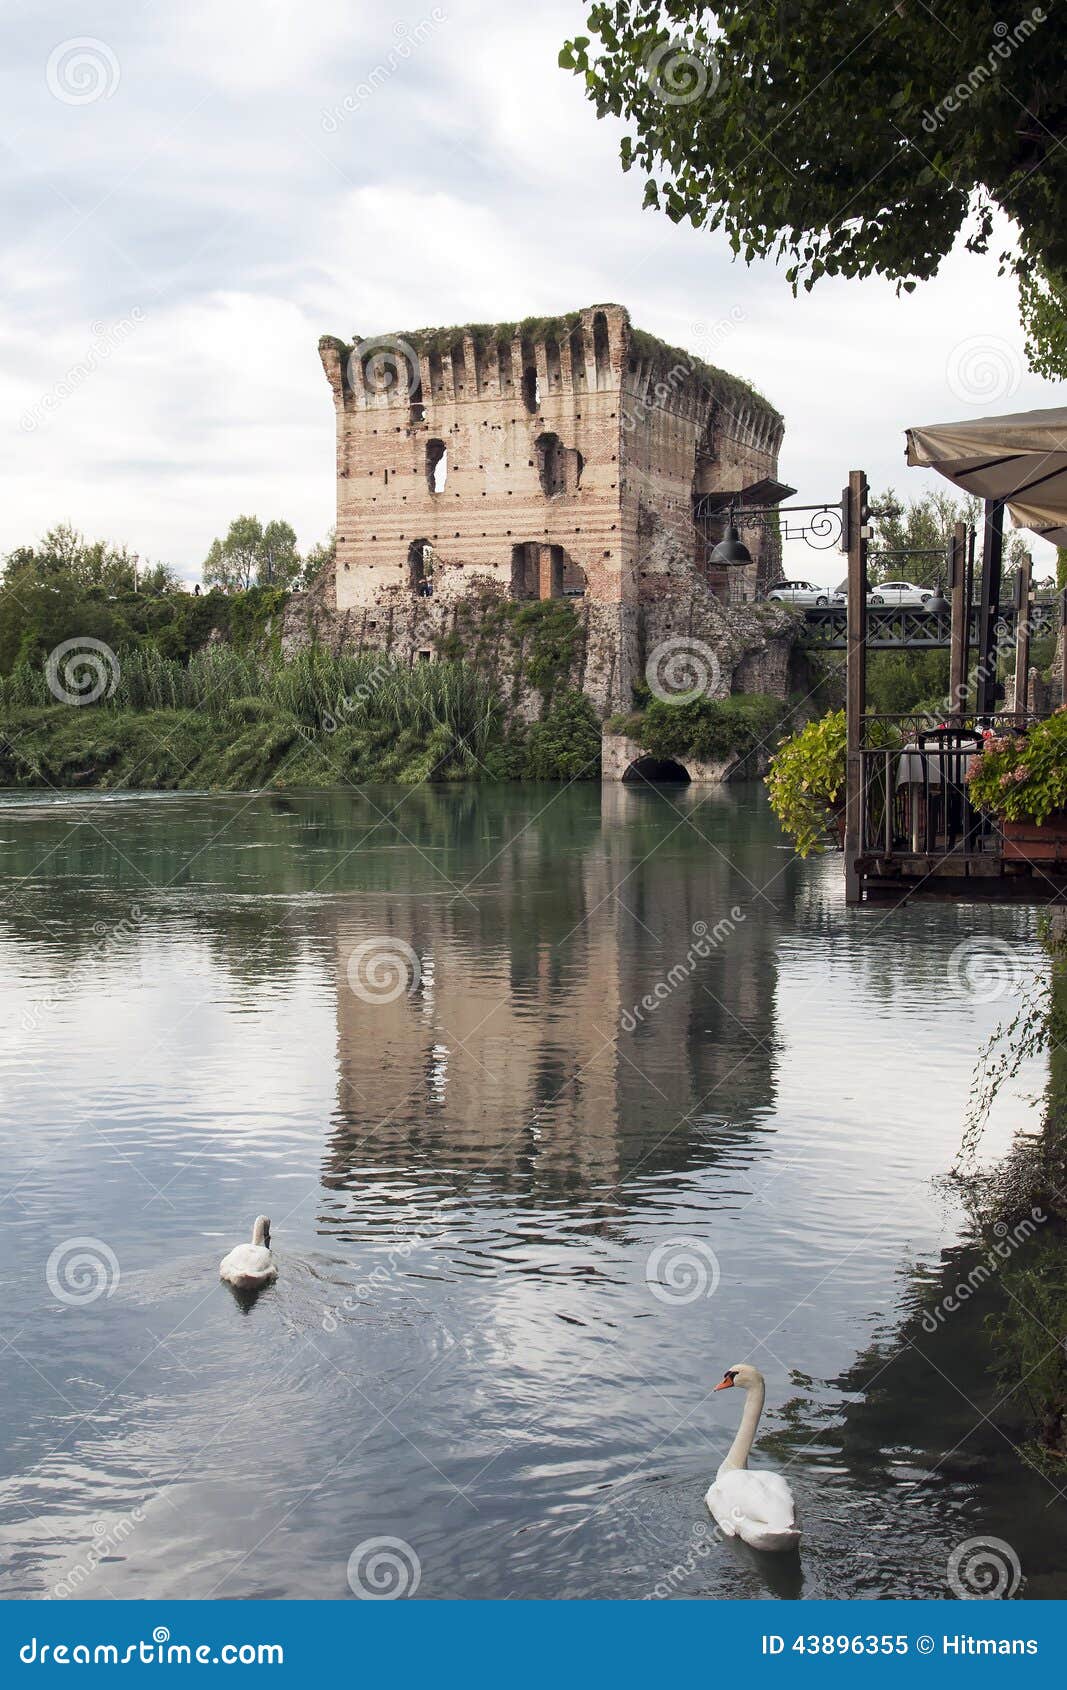 river mincio and the village of borghetto